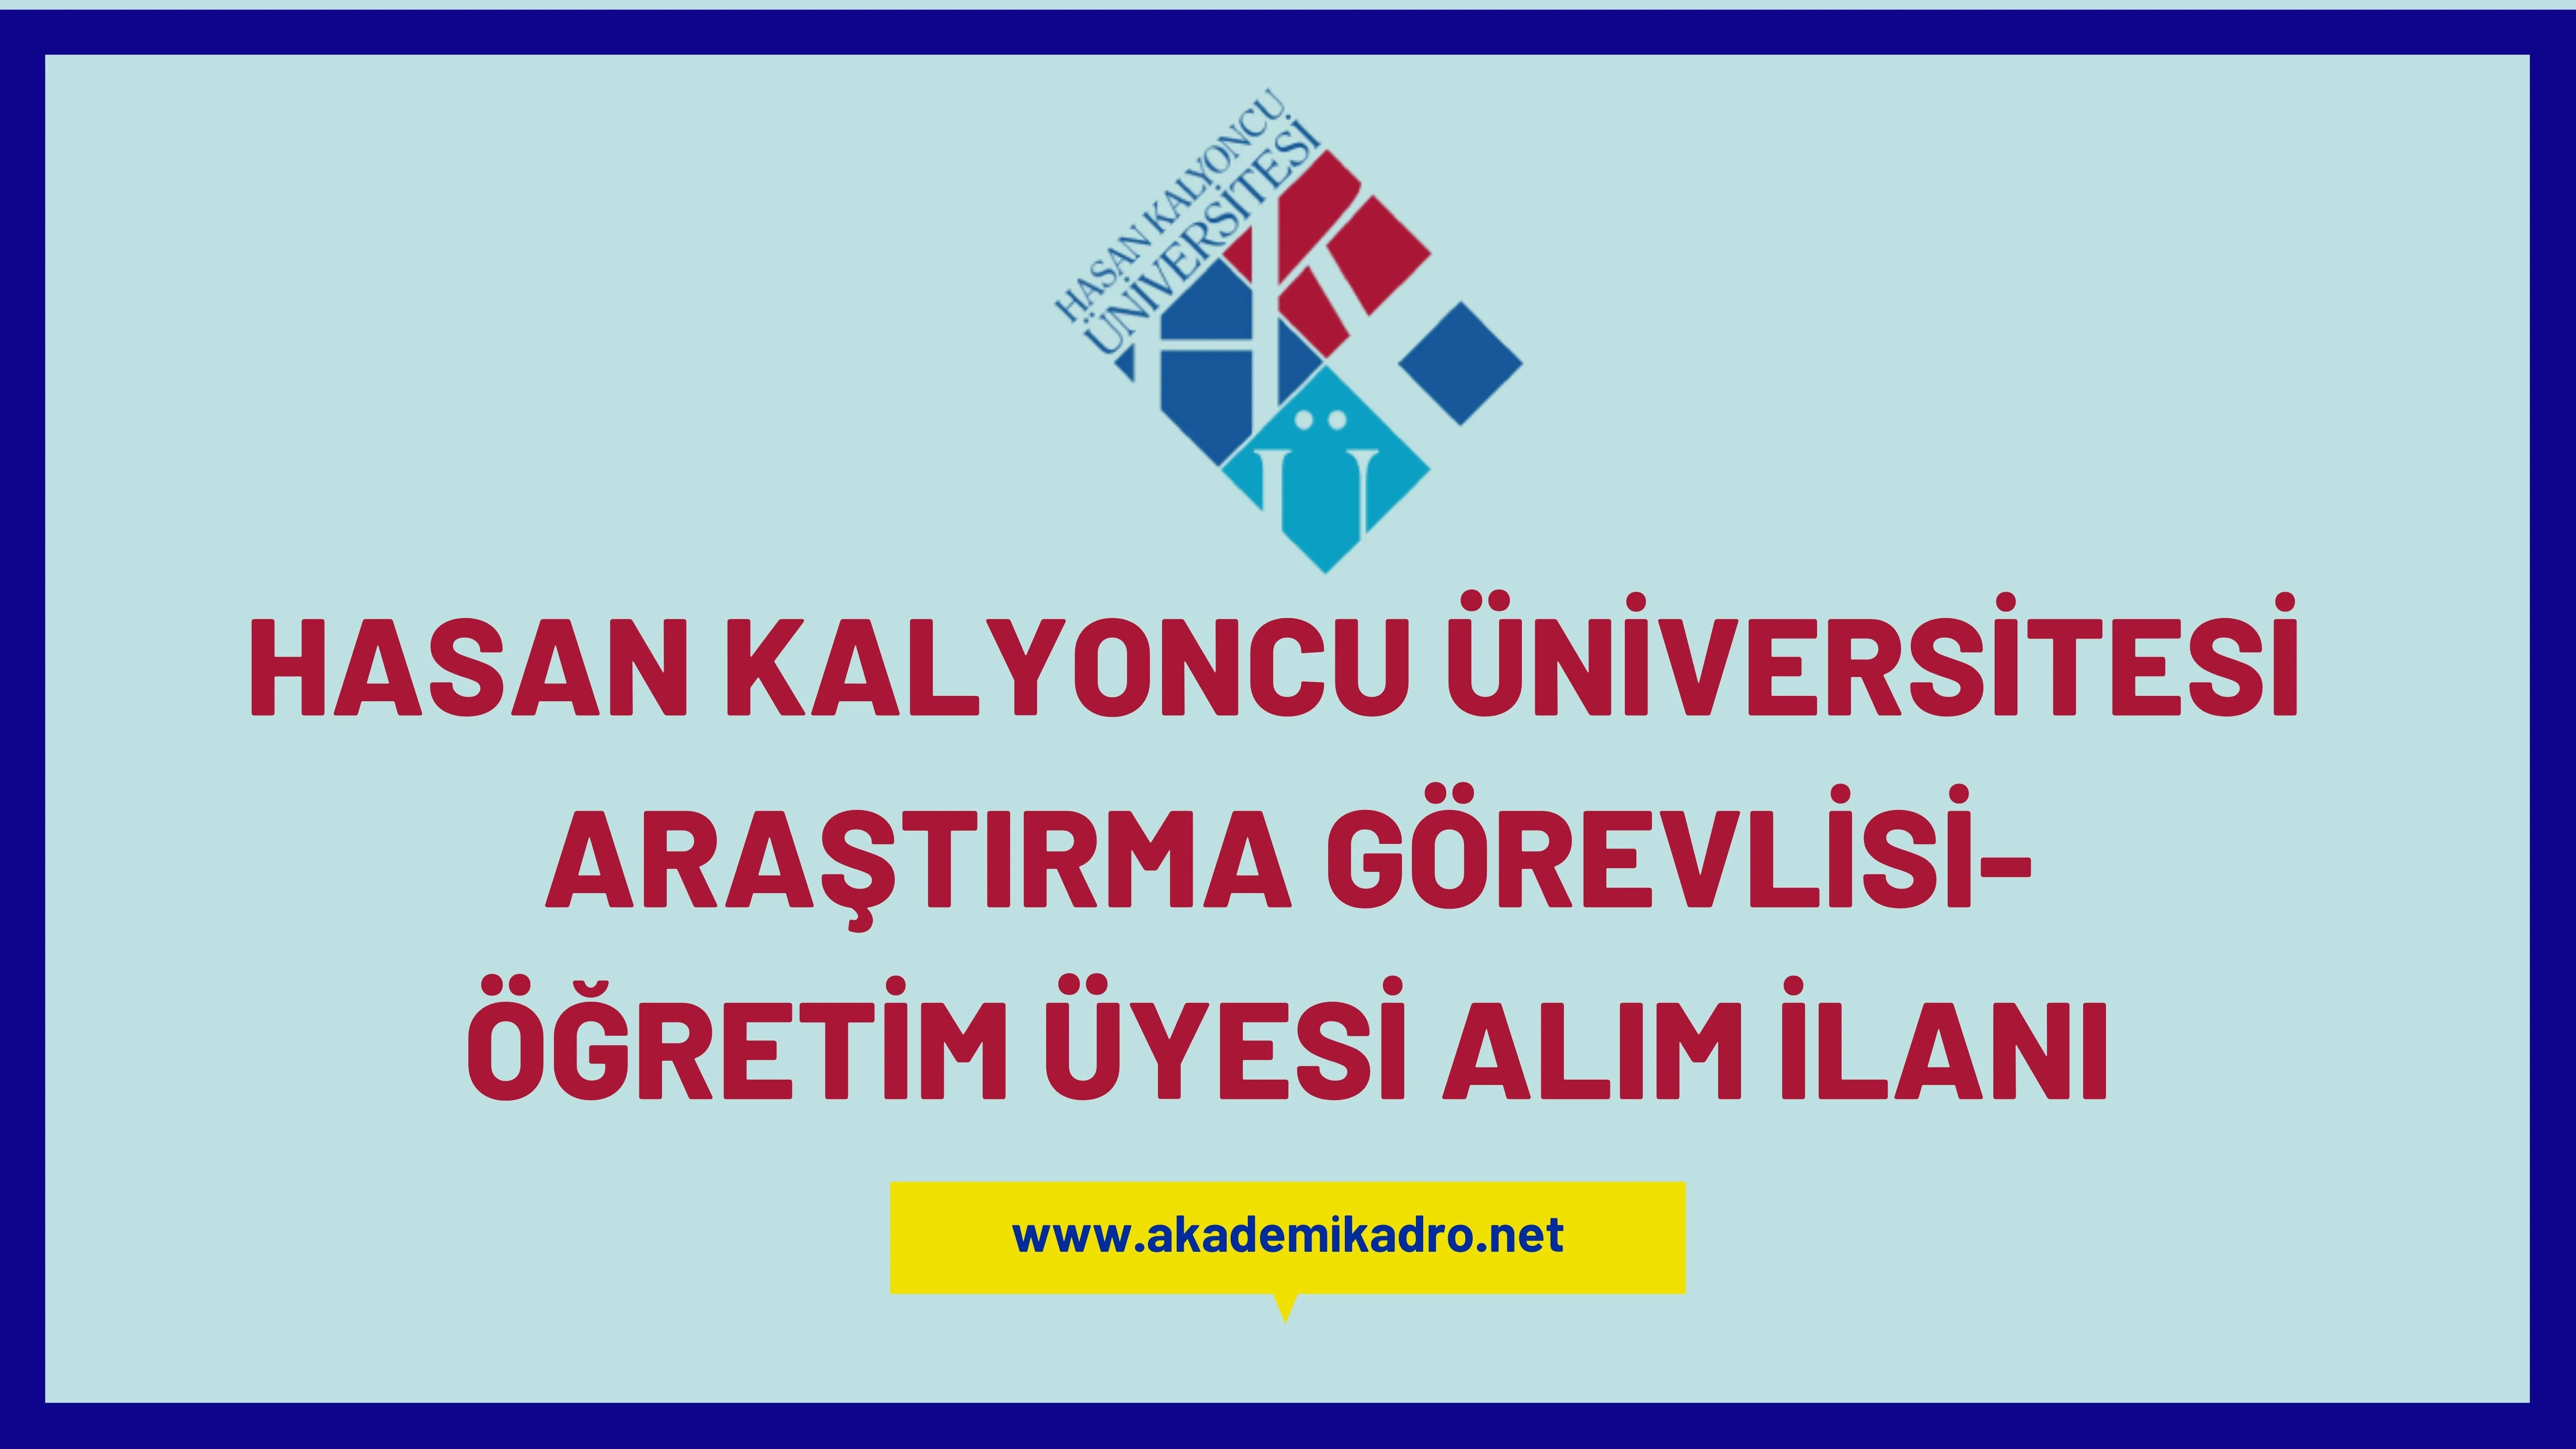 Hasan Kalyoncu Üniversitesi 37 öğretim üyesi ve 3 Araştırma görevlisi alacaktır.